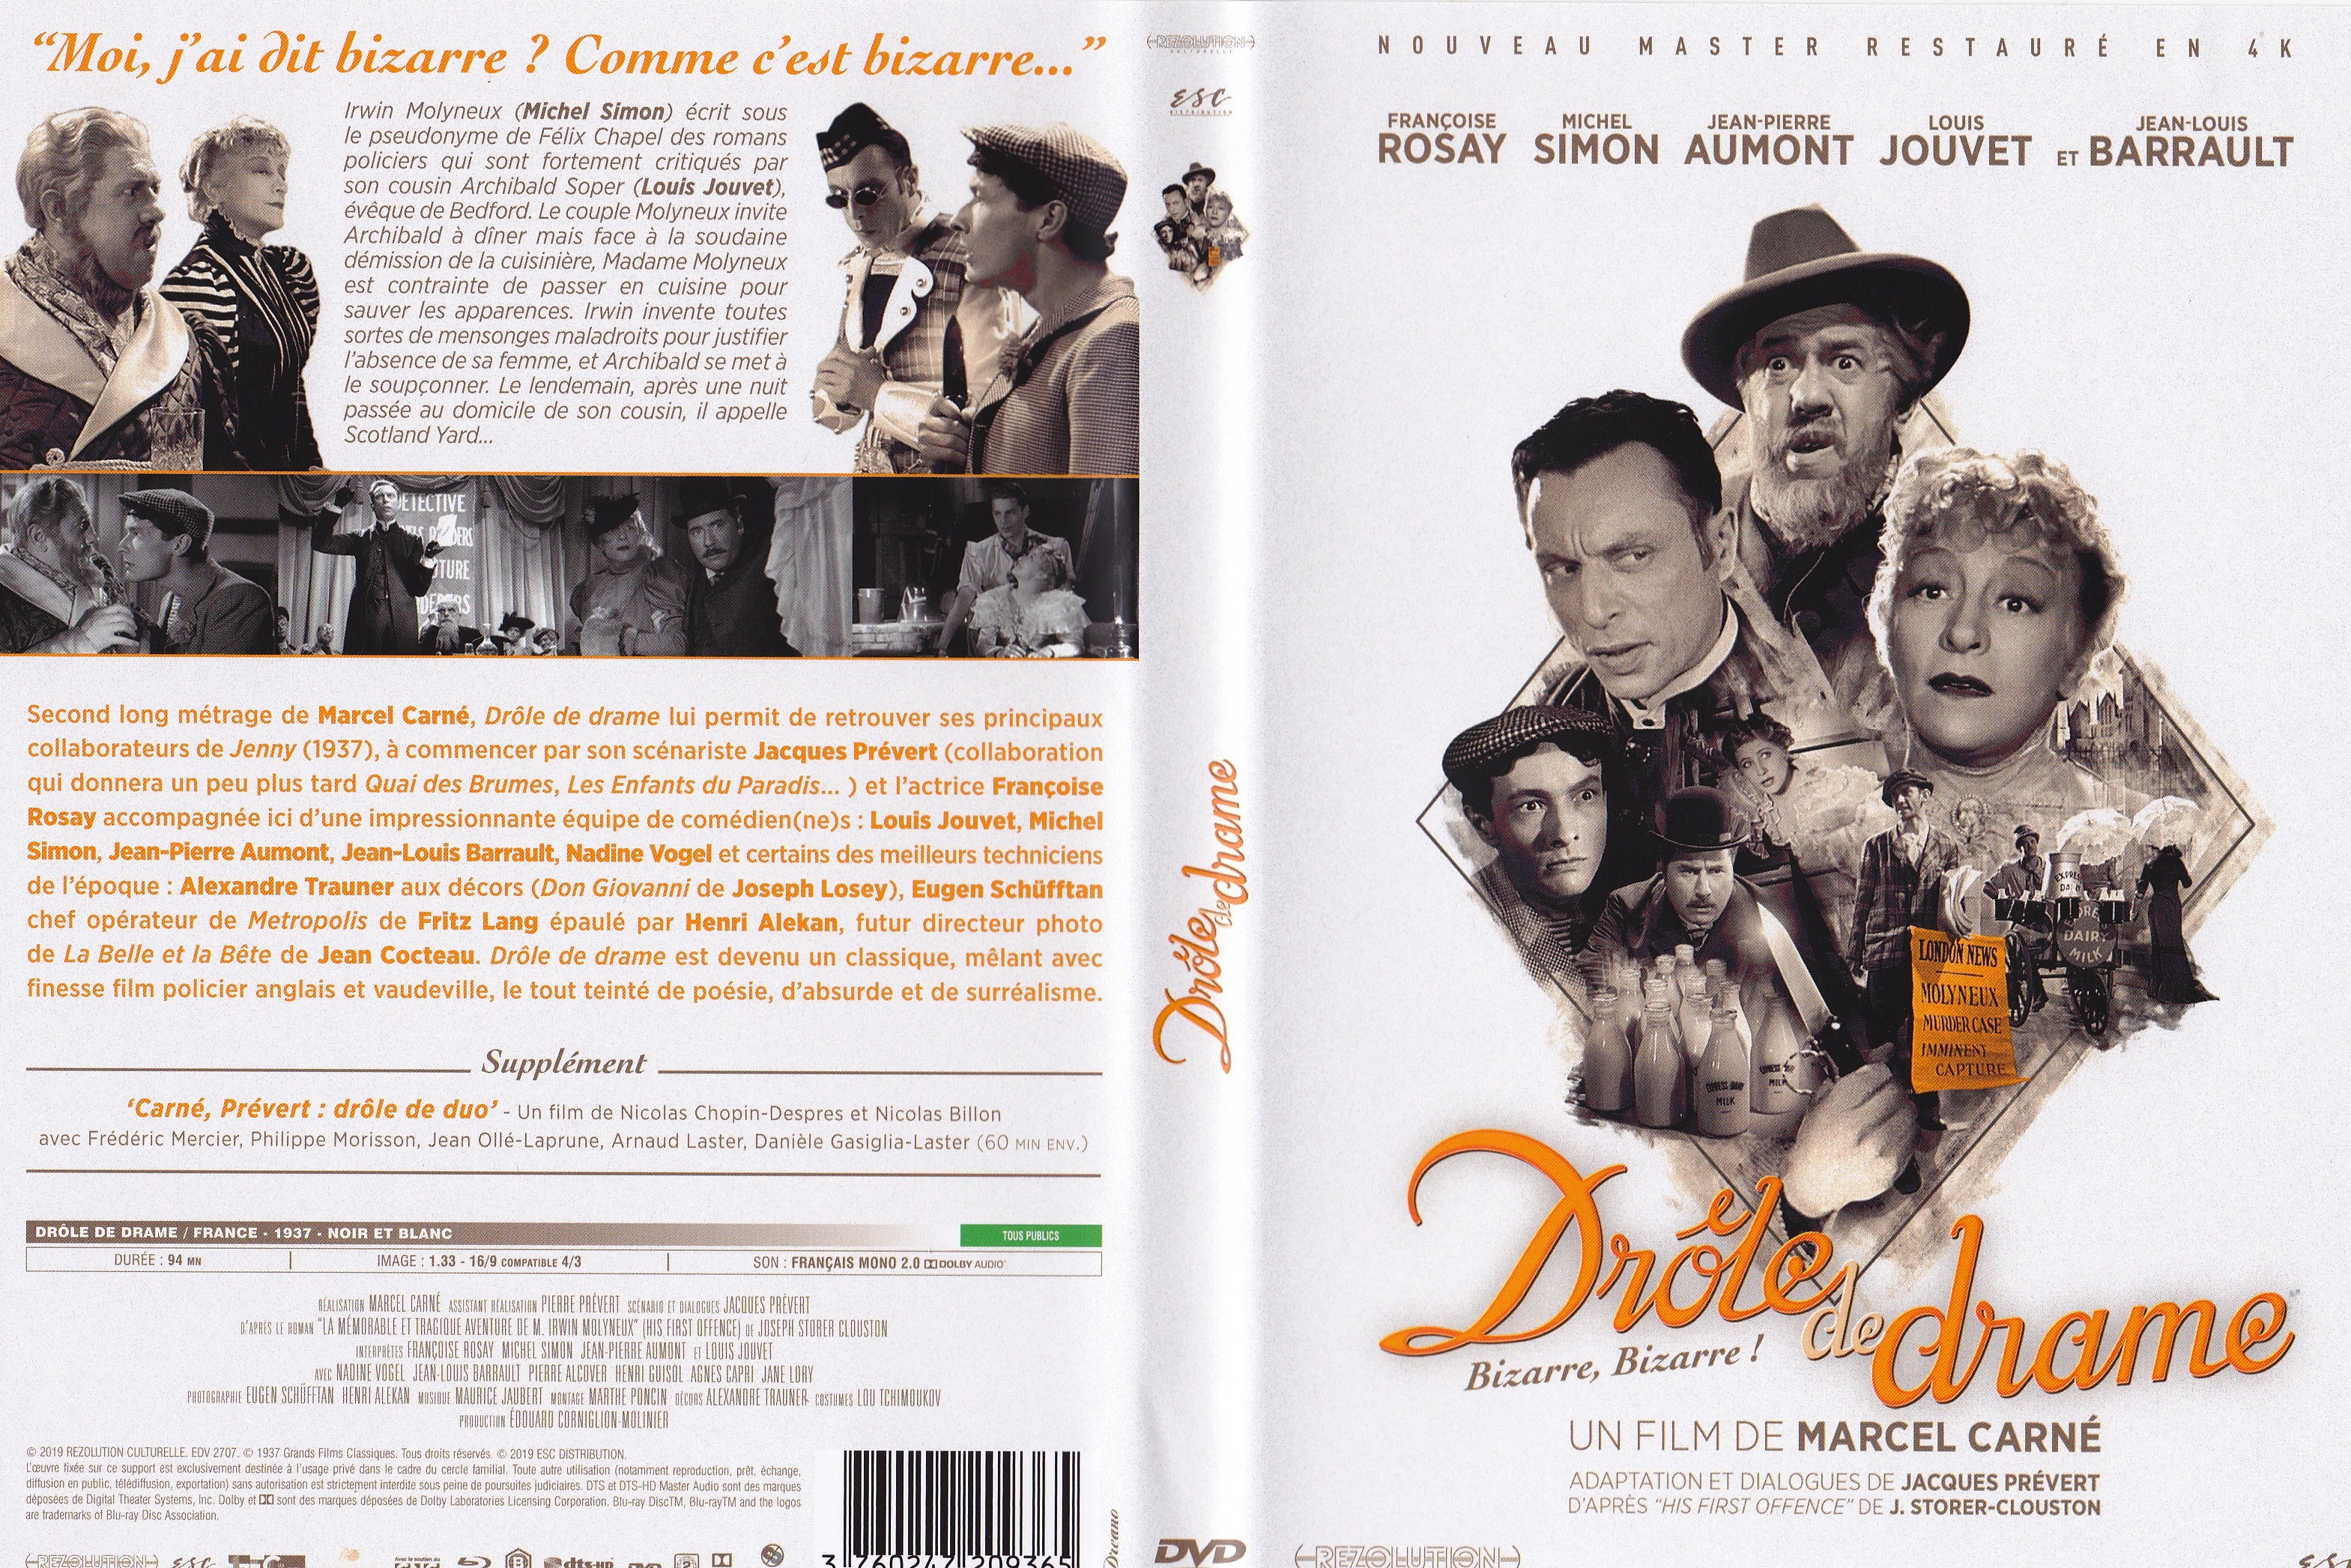 Jaquette DVD Drole de drame